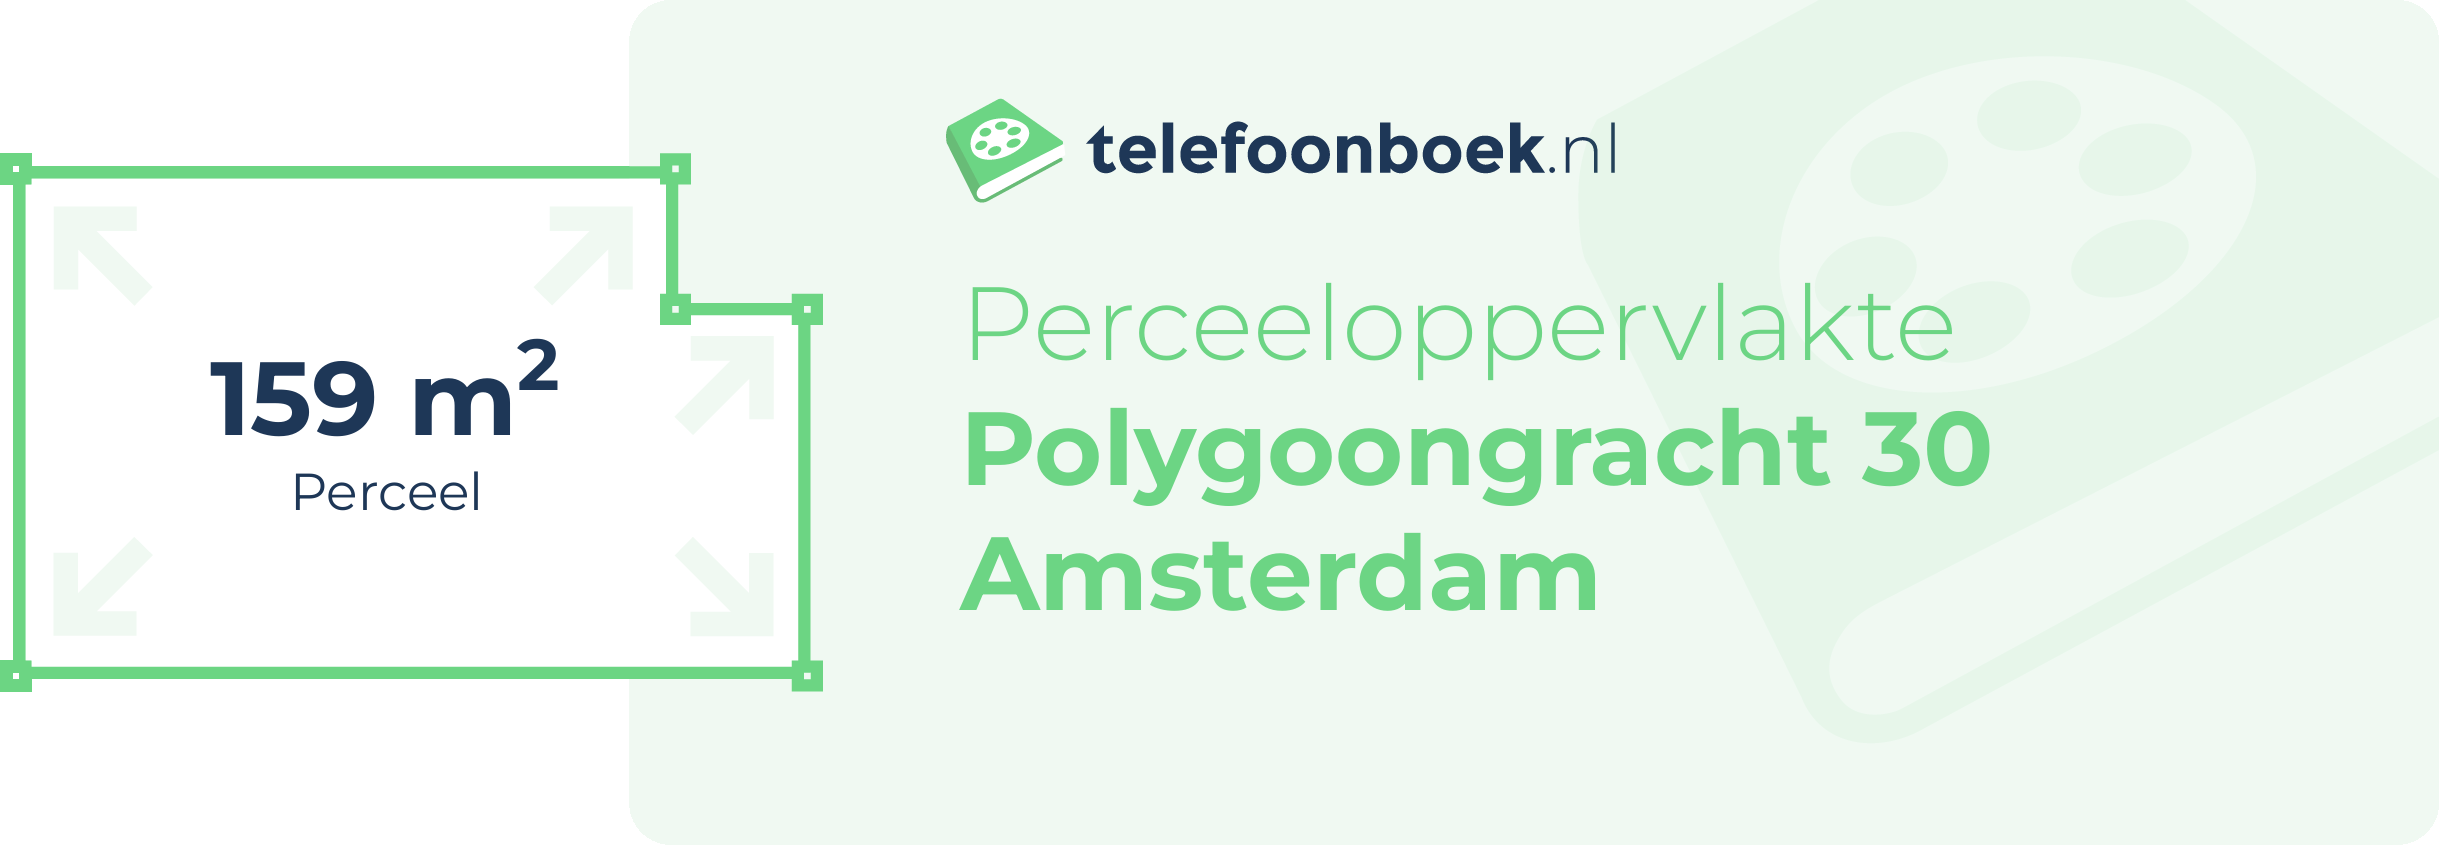 Perceeloppervlakte Polygoongracht 30 Amsterdam